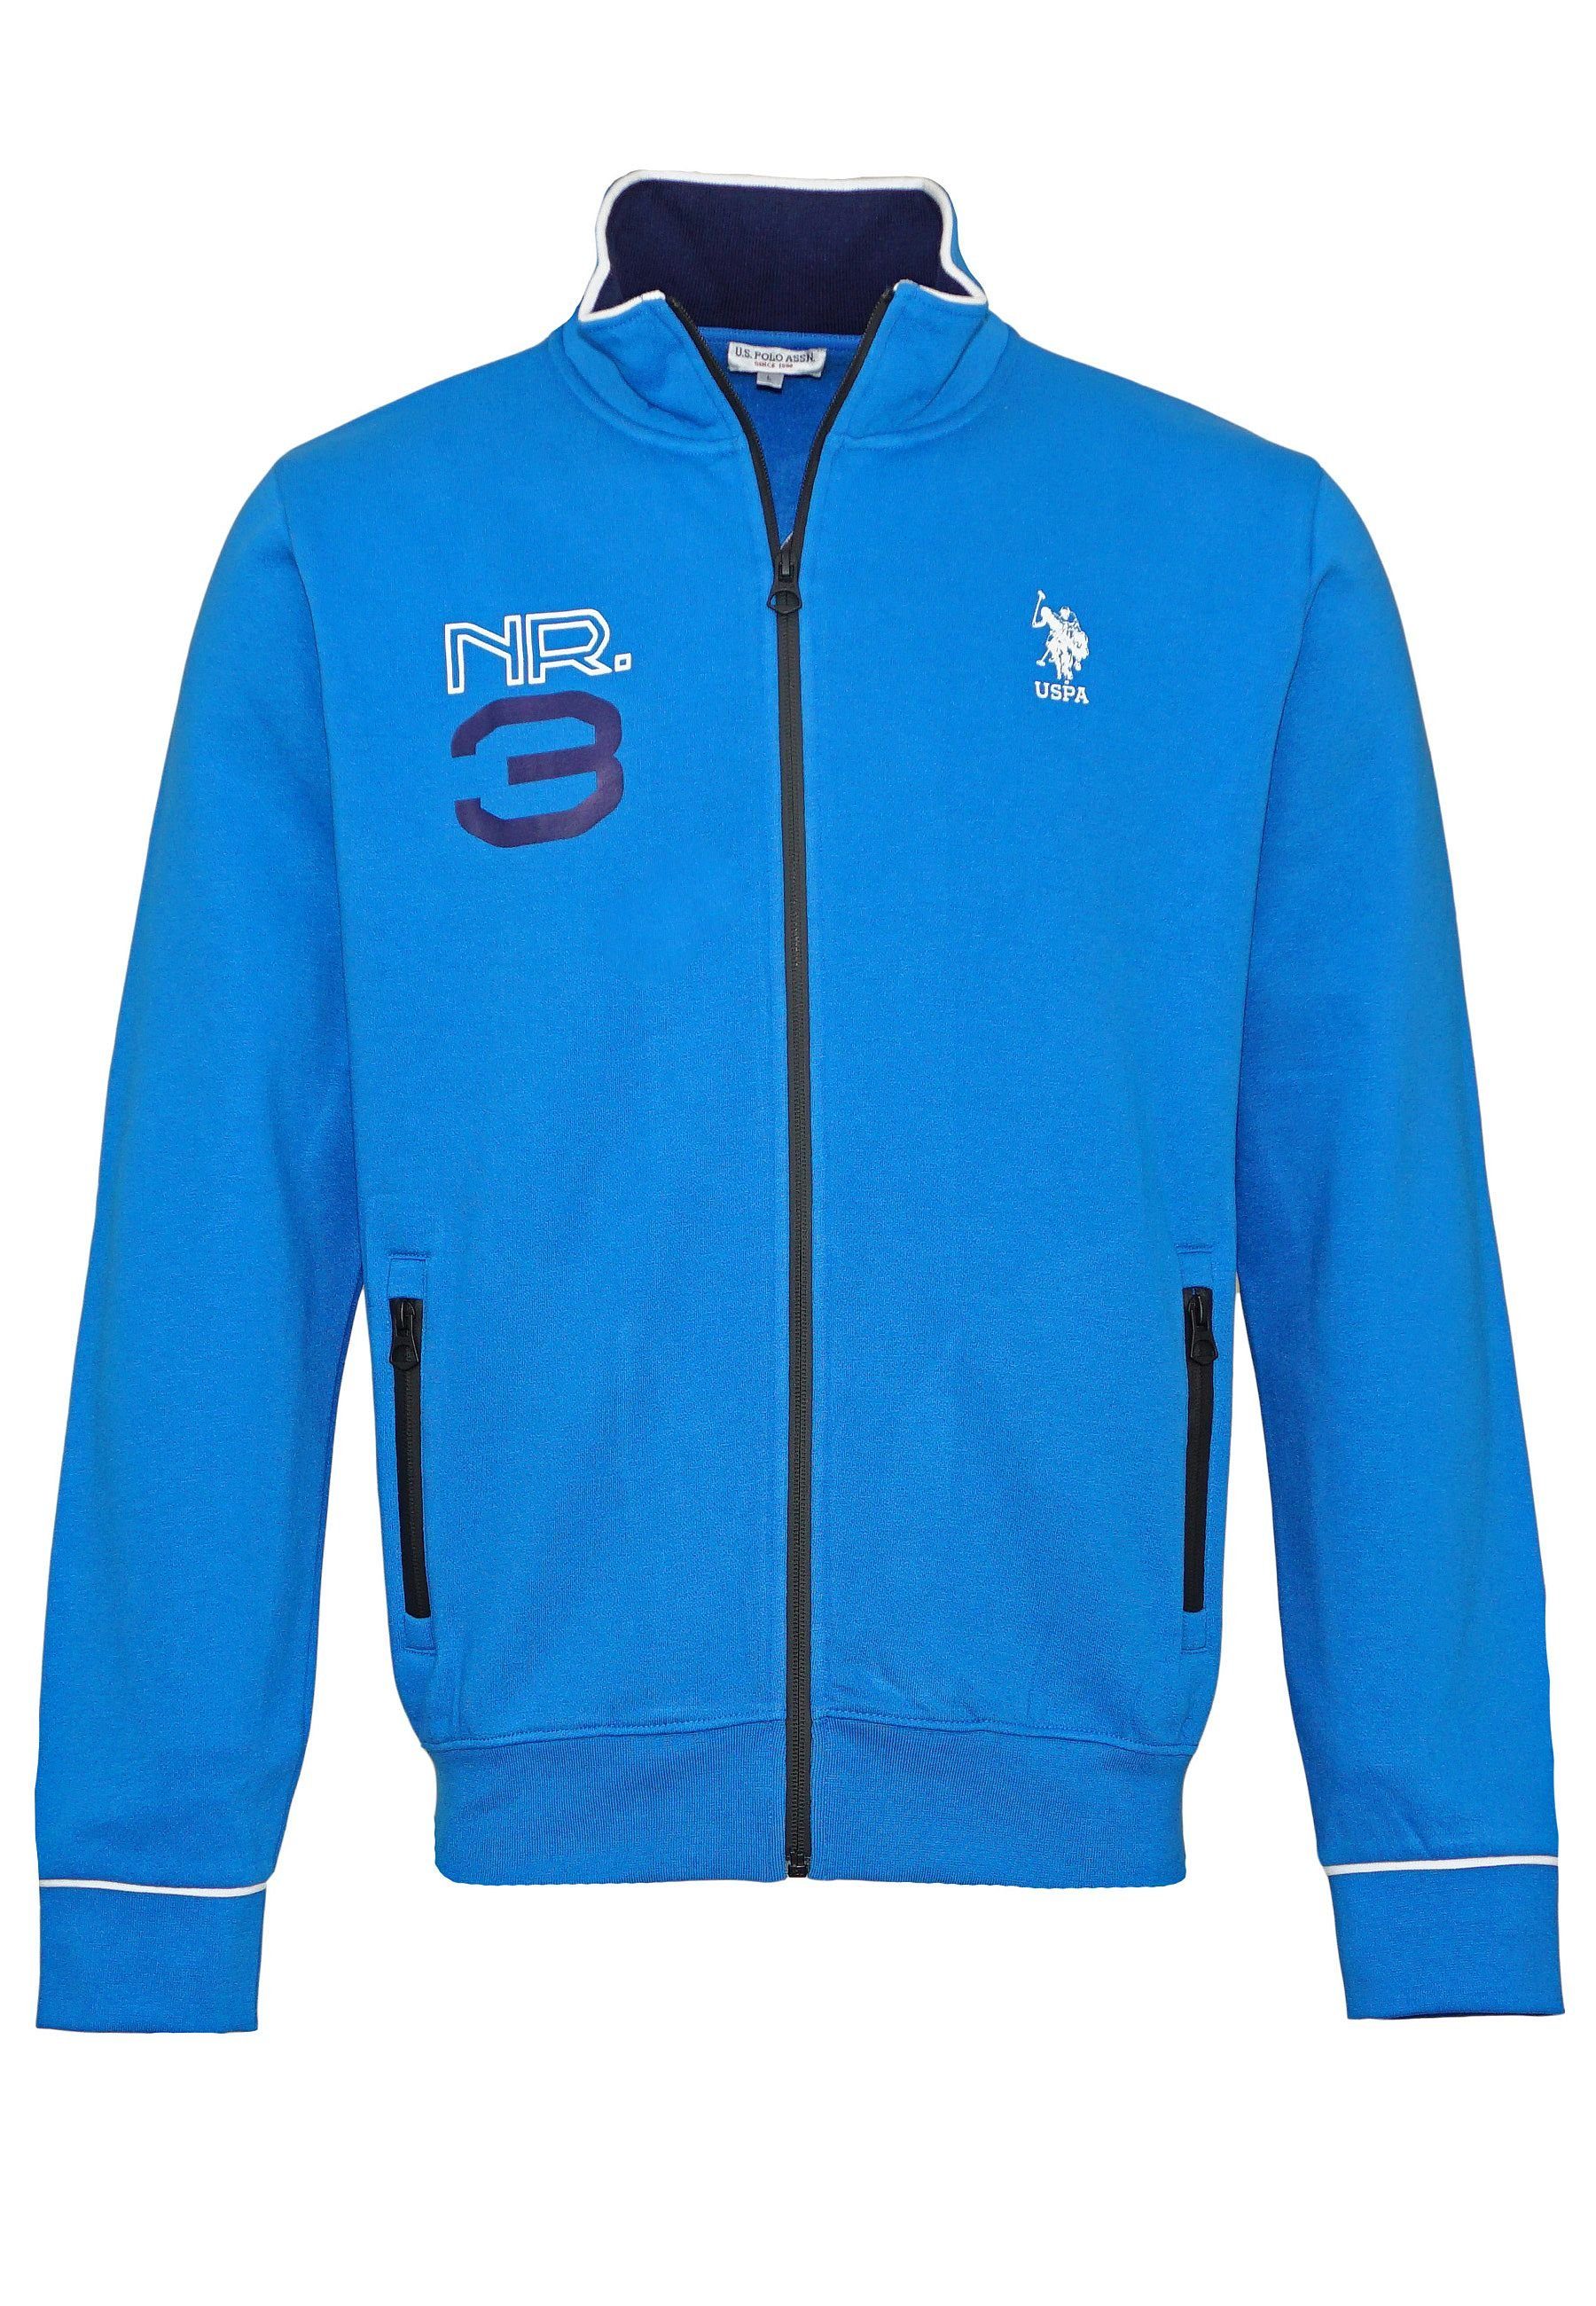 U.S. Polo Assn Sweatjacke Jacke Full Zip Sweatjacket Pro No.3 blau